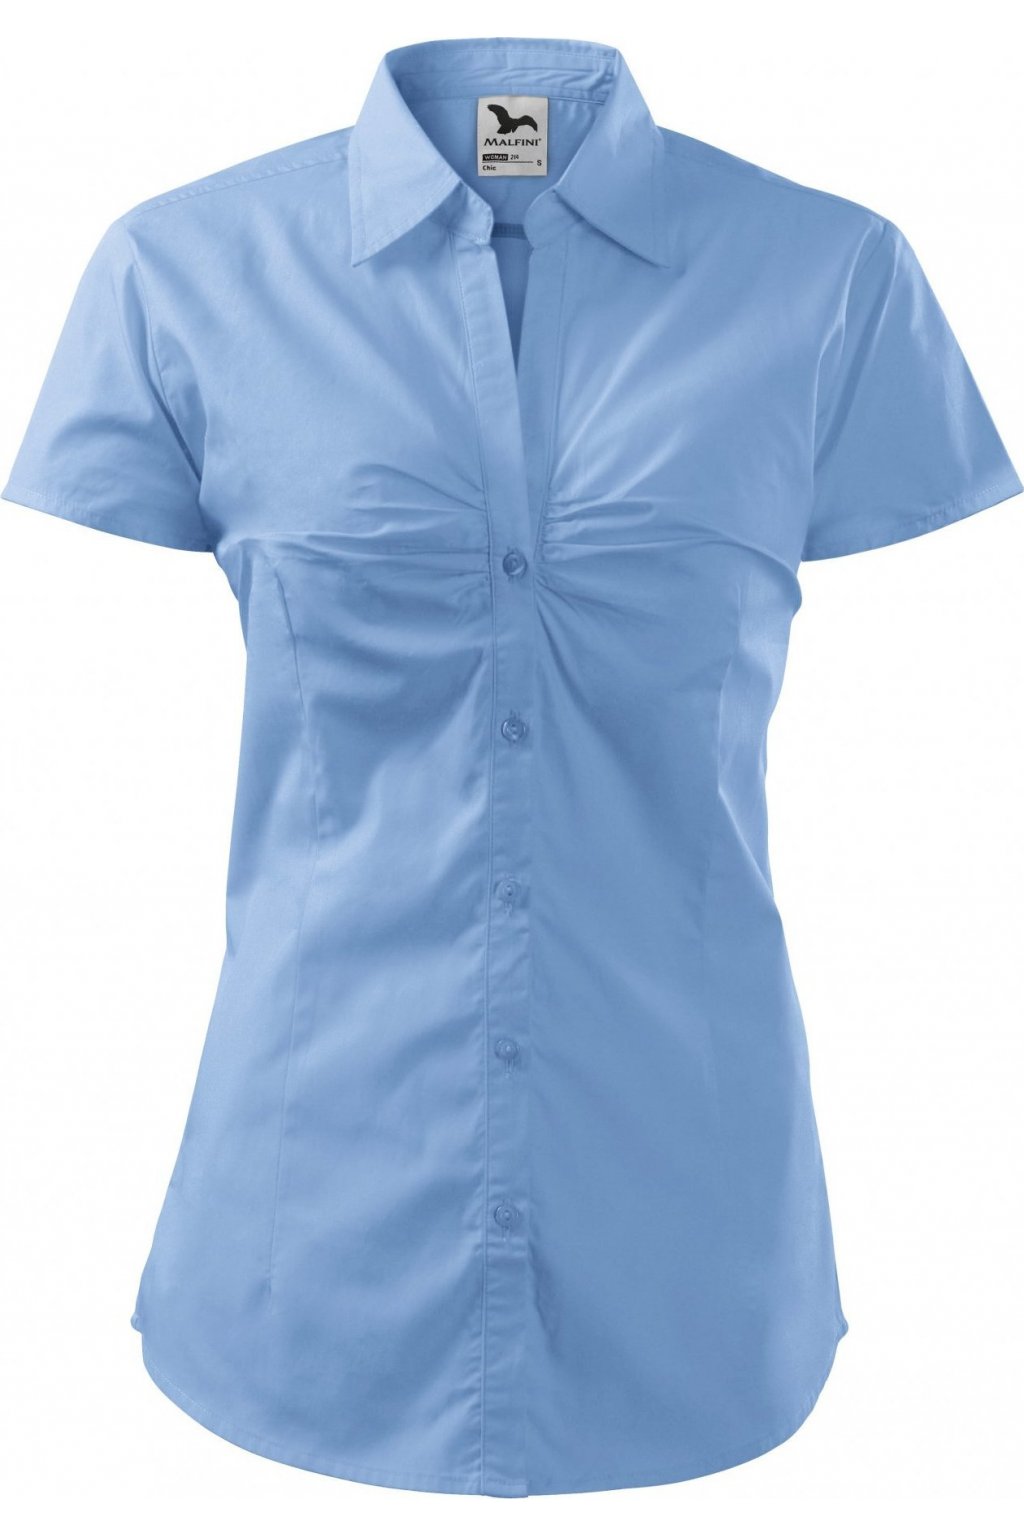 Chic 214 Košile dámská, Adler Malfini - NakupTextil - reklamní textil Adler  / Malfini - potisk textilu, výšivky